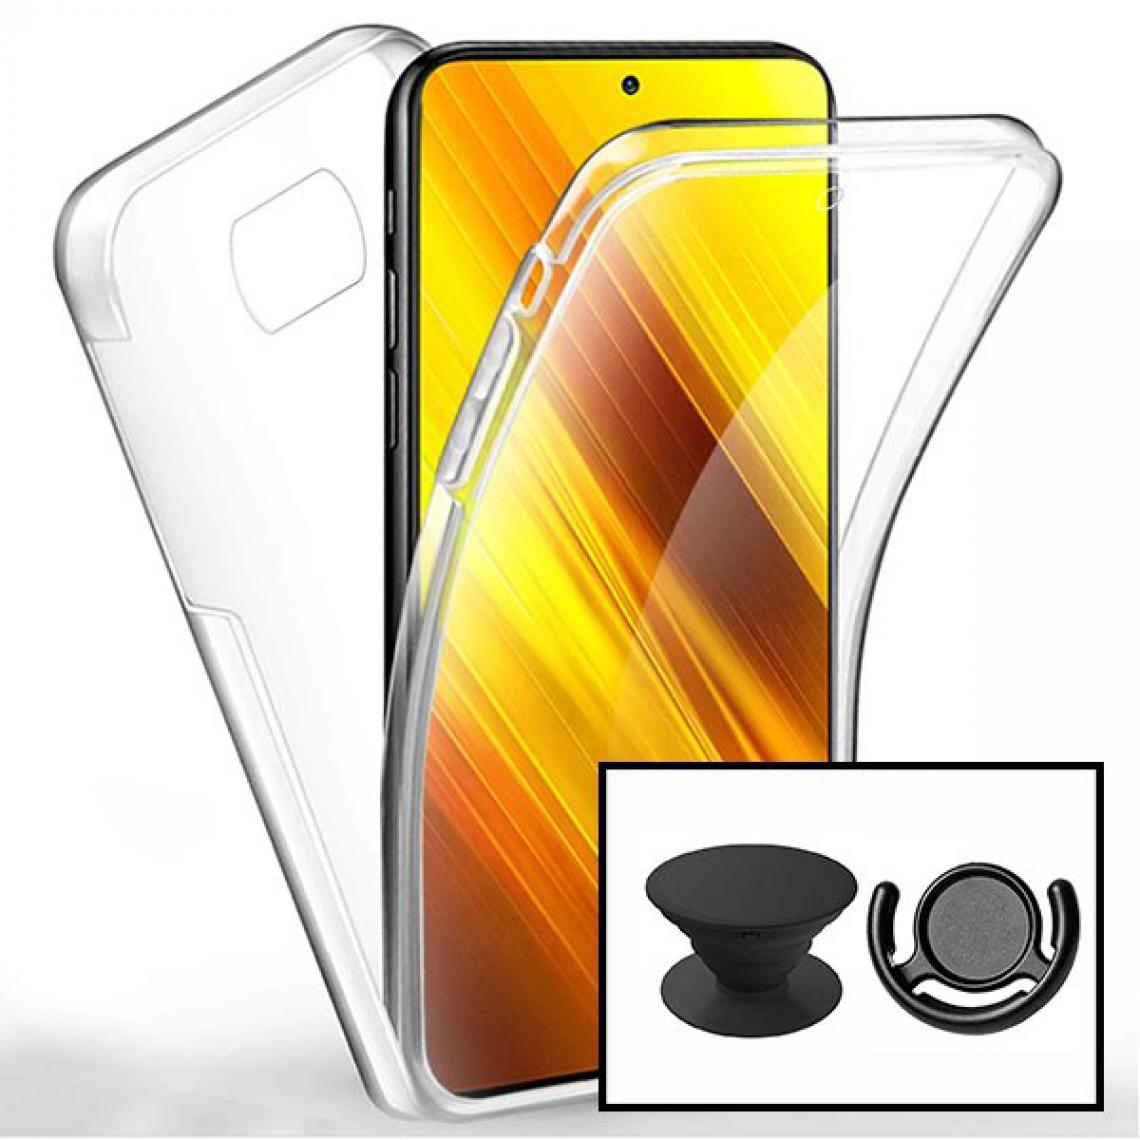 Phonecare - Kit Coque 3x1 360° Anti Choc + 1 GripHolder + 1 Support GripHolder Noir pour Xiaomi Mi 10T Lite - Coque, étui smartphone